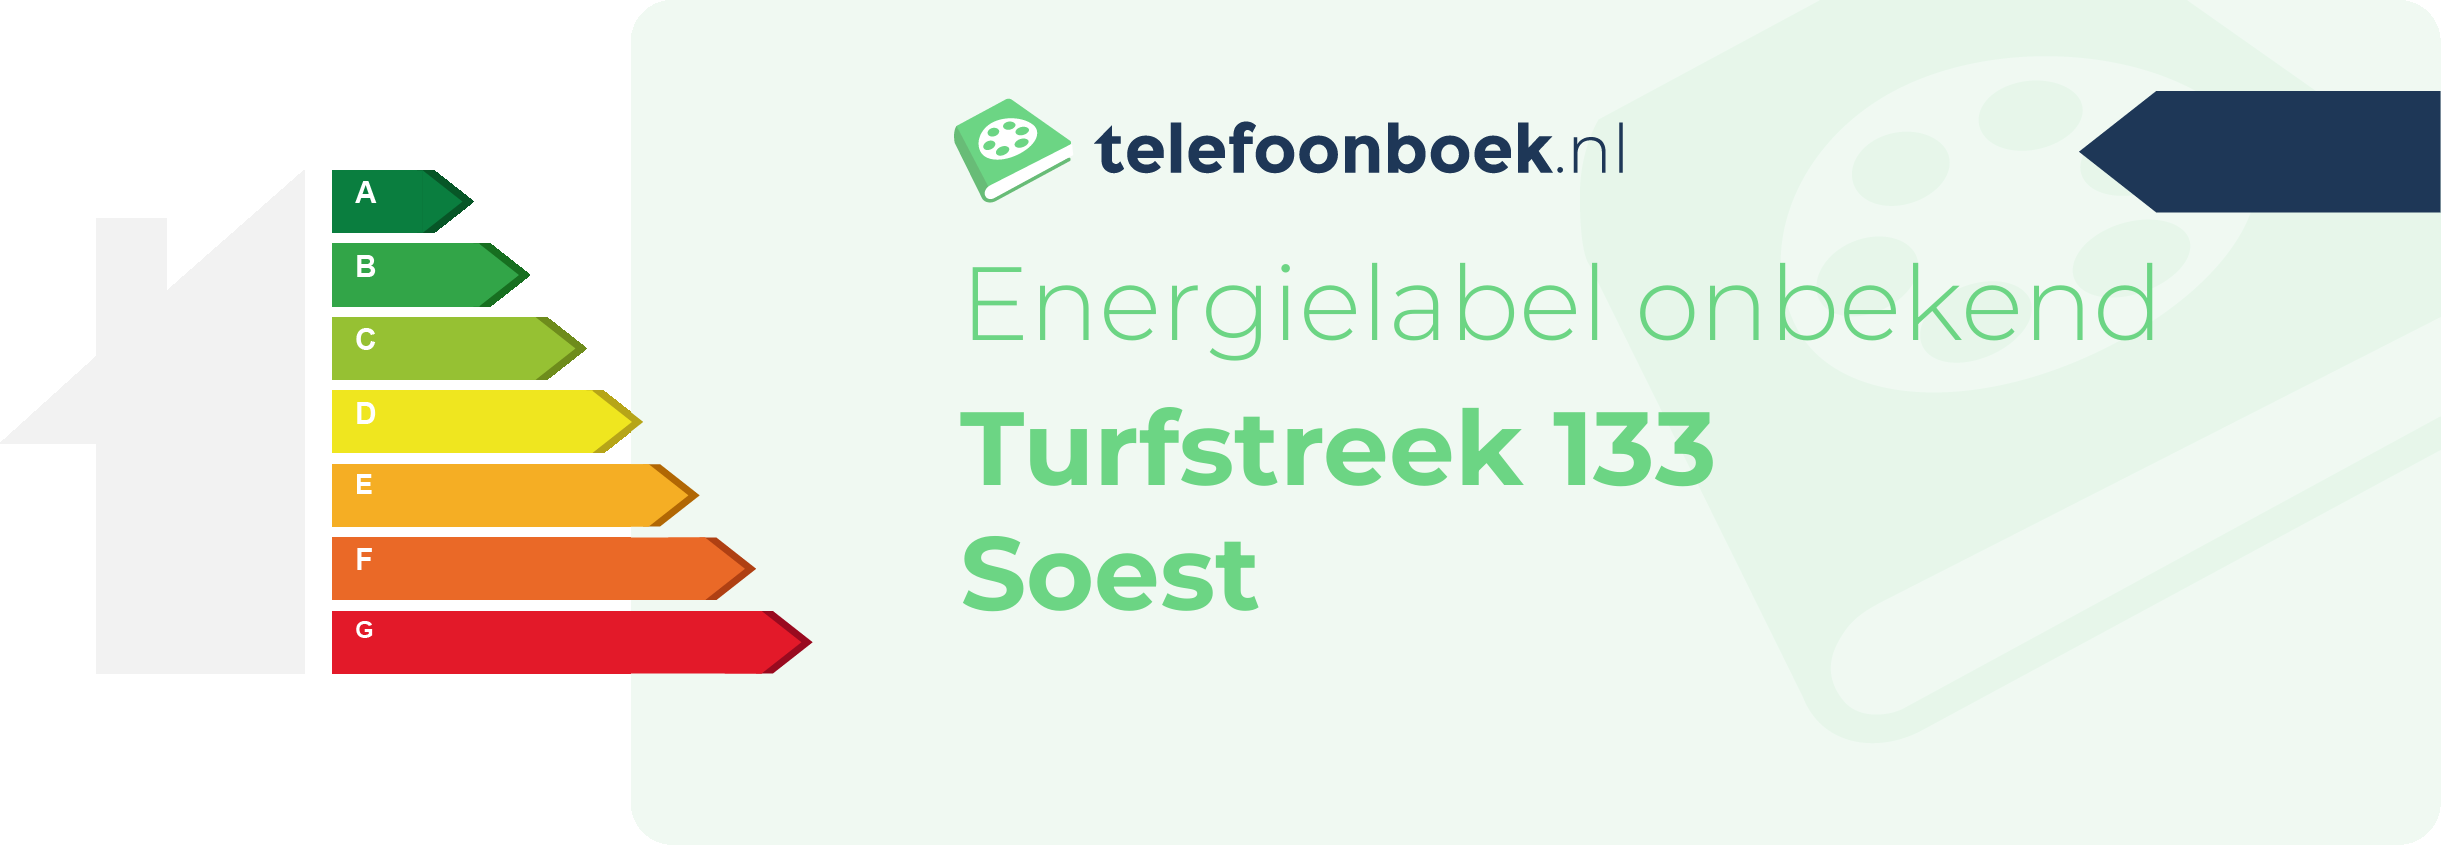 Energielabel Turfstreek 133 Soest